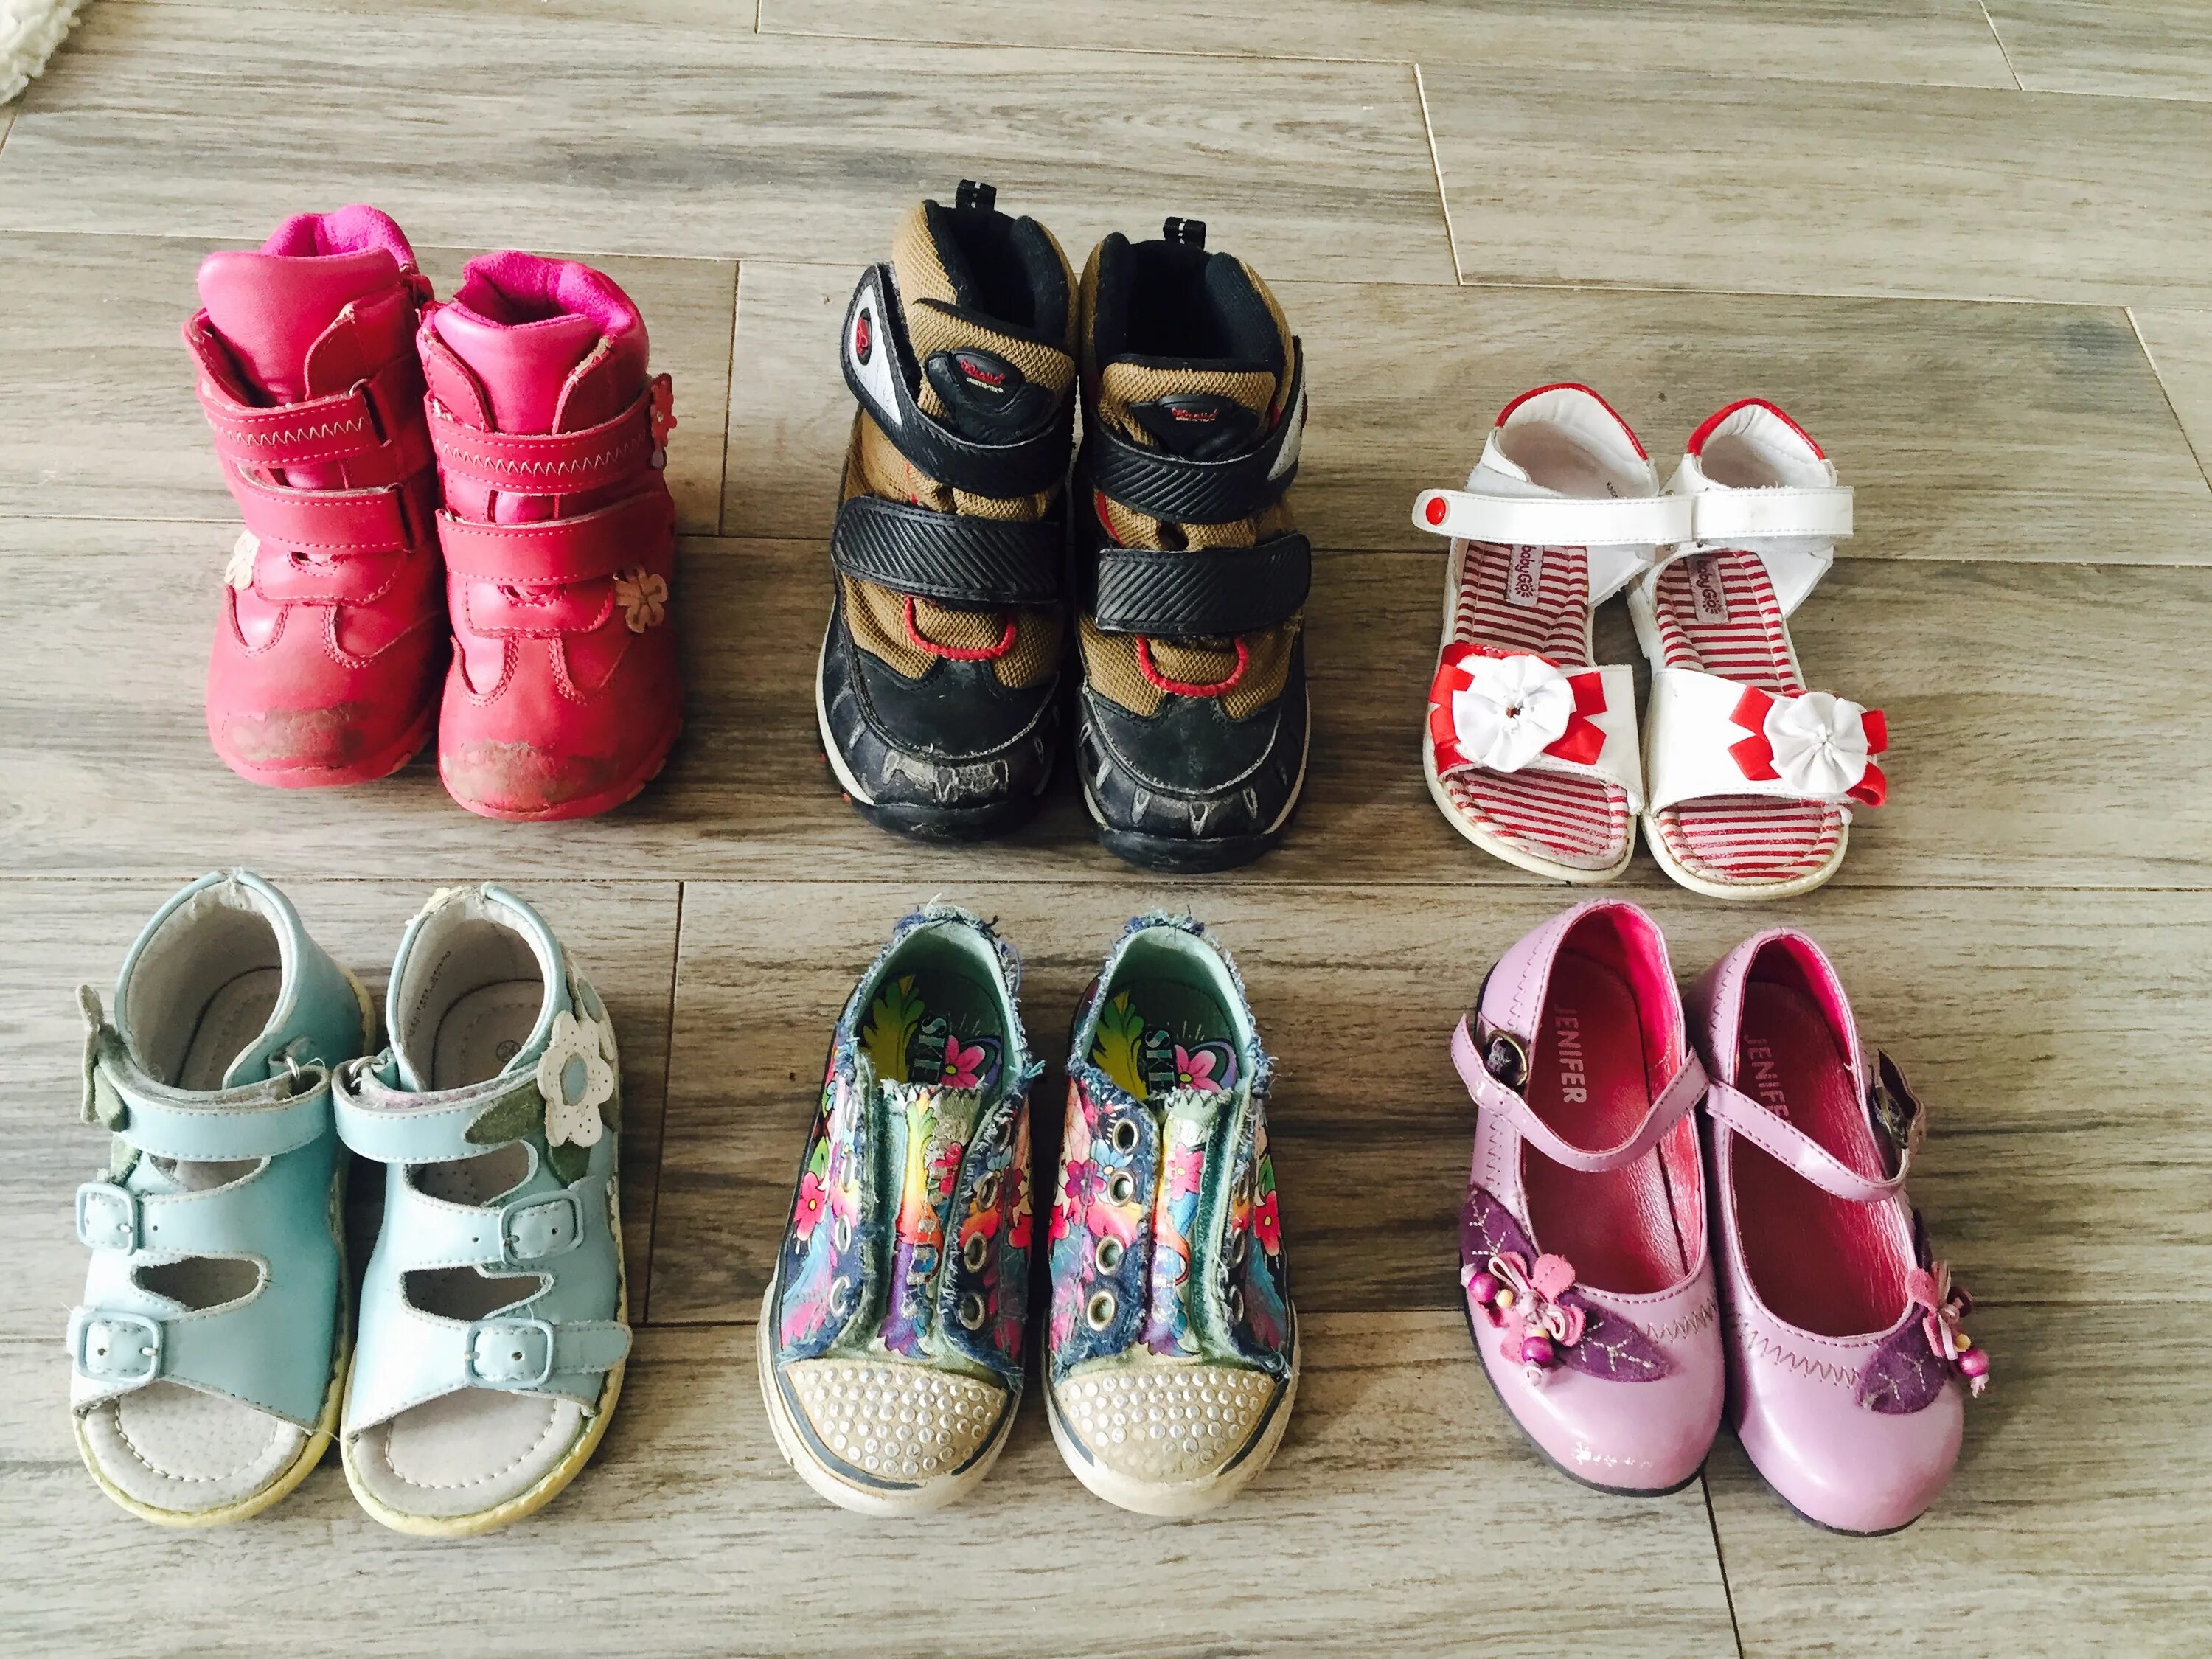 Спб авито купить обувь. Детские и подростковые вещи. Детская обувь даром. Одежда и обувь даром. Одежда и обувь детская бу.